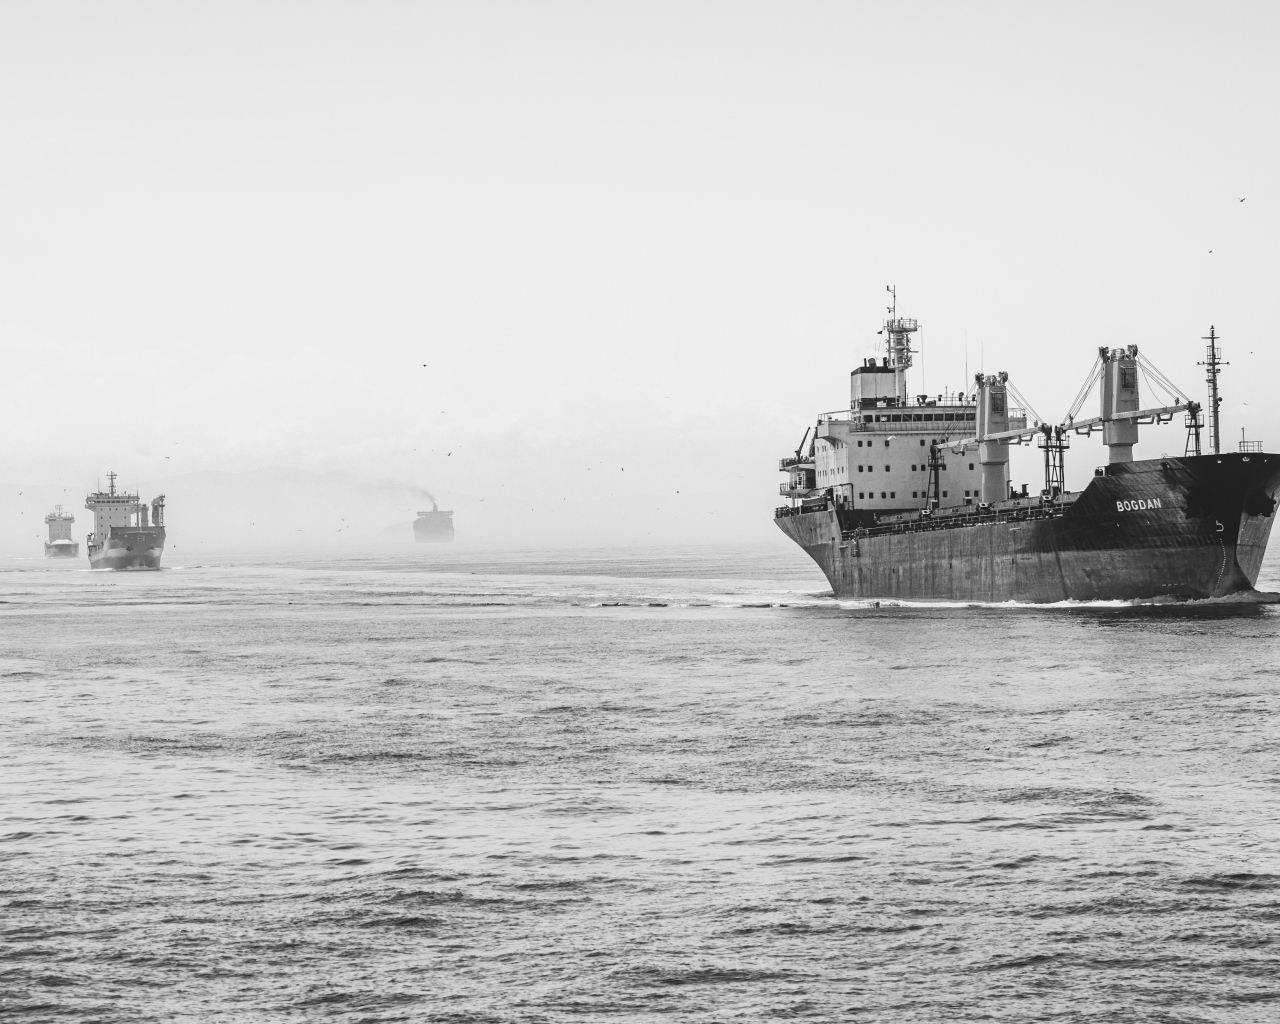 Big ship at sea black and white photo